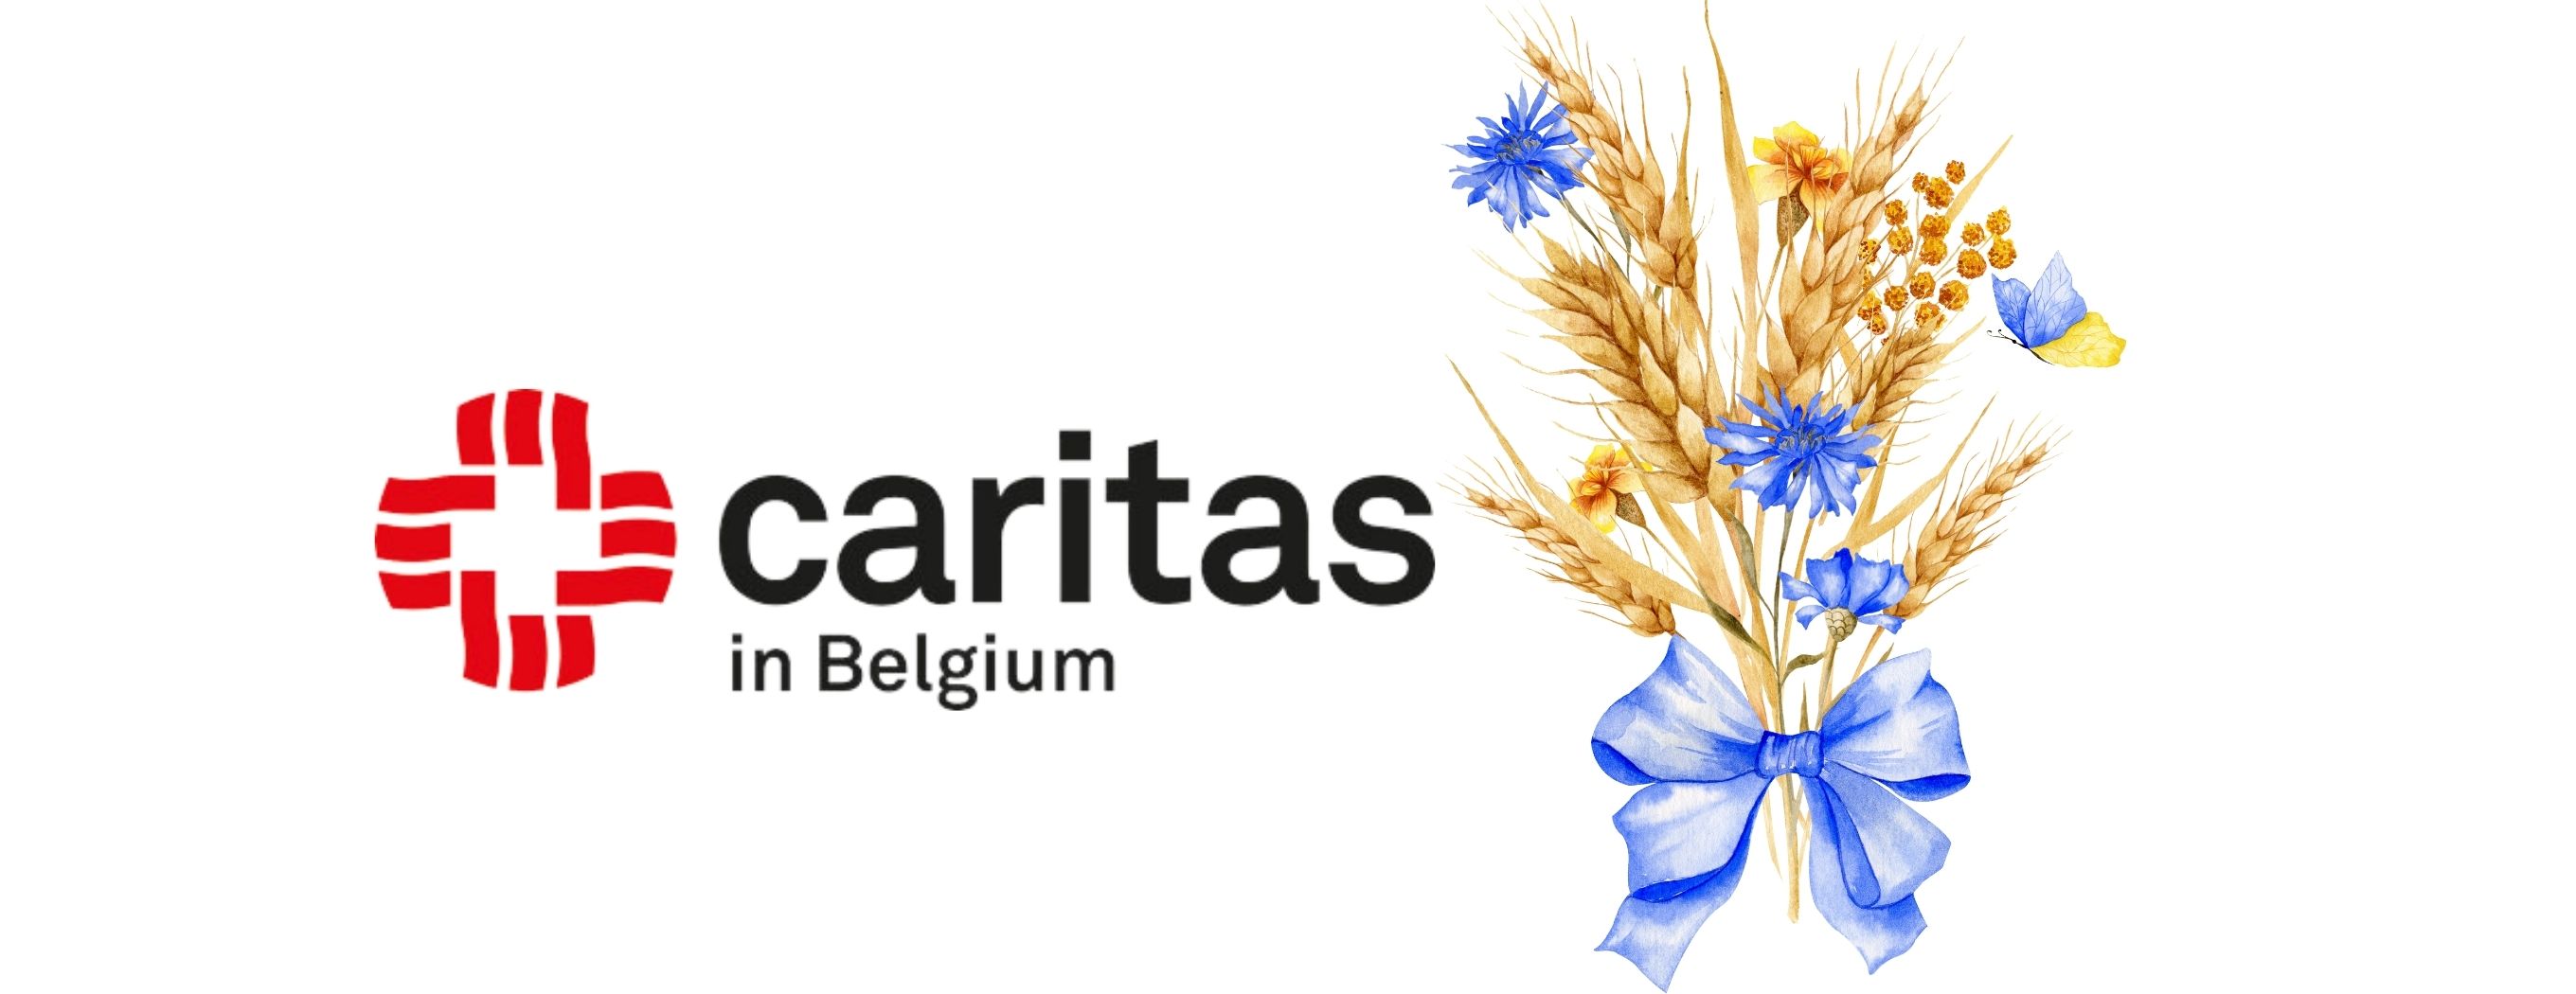 Huge Gratitude for Caritas Belgium